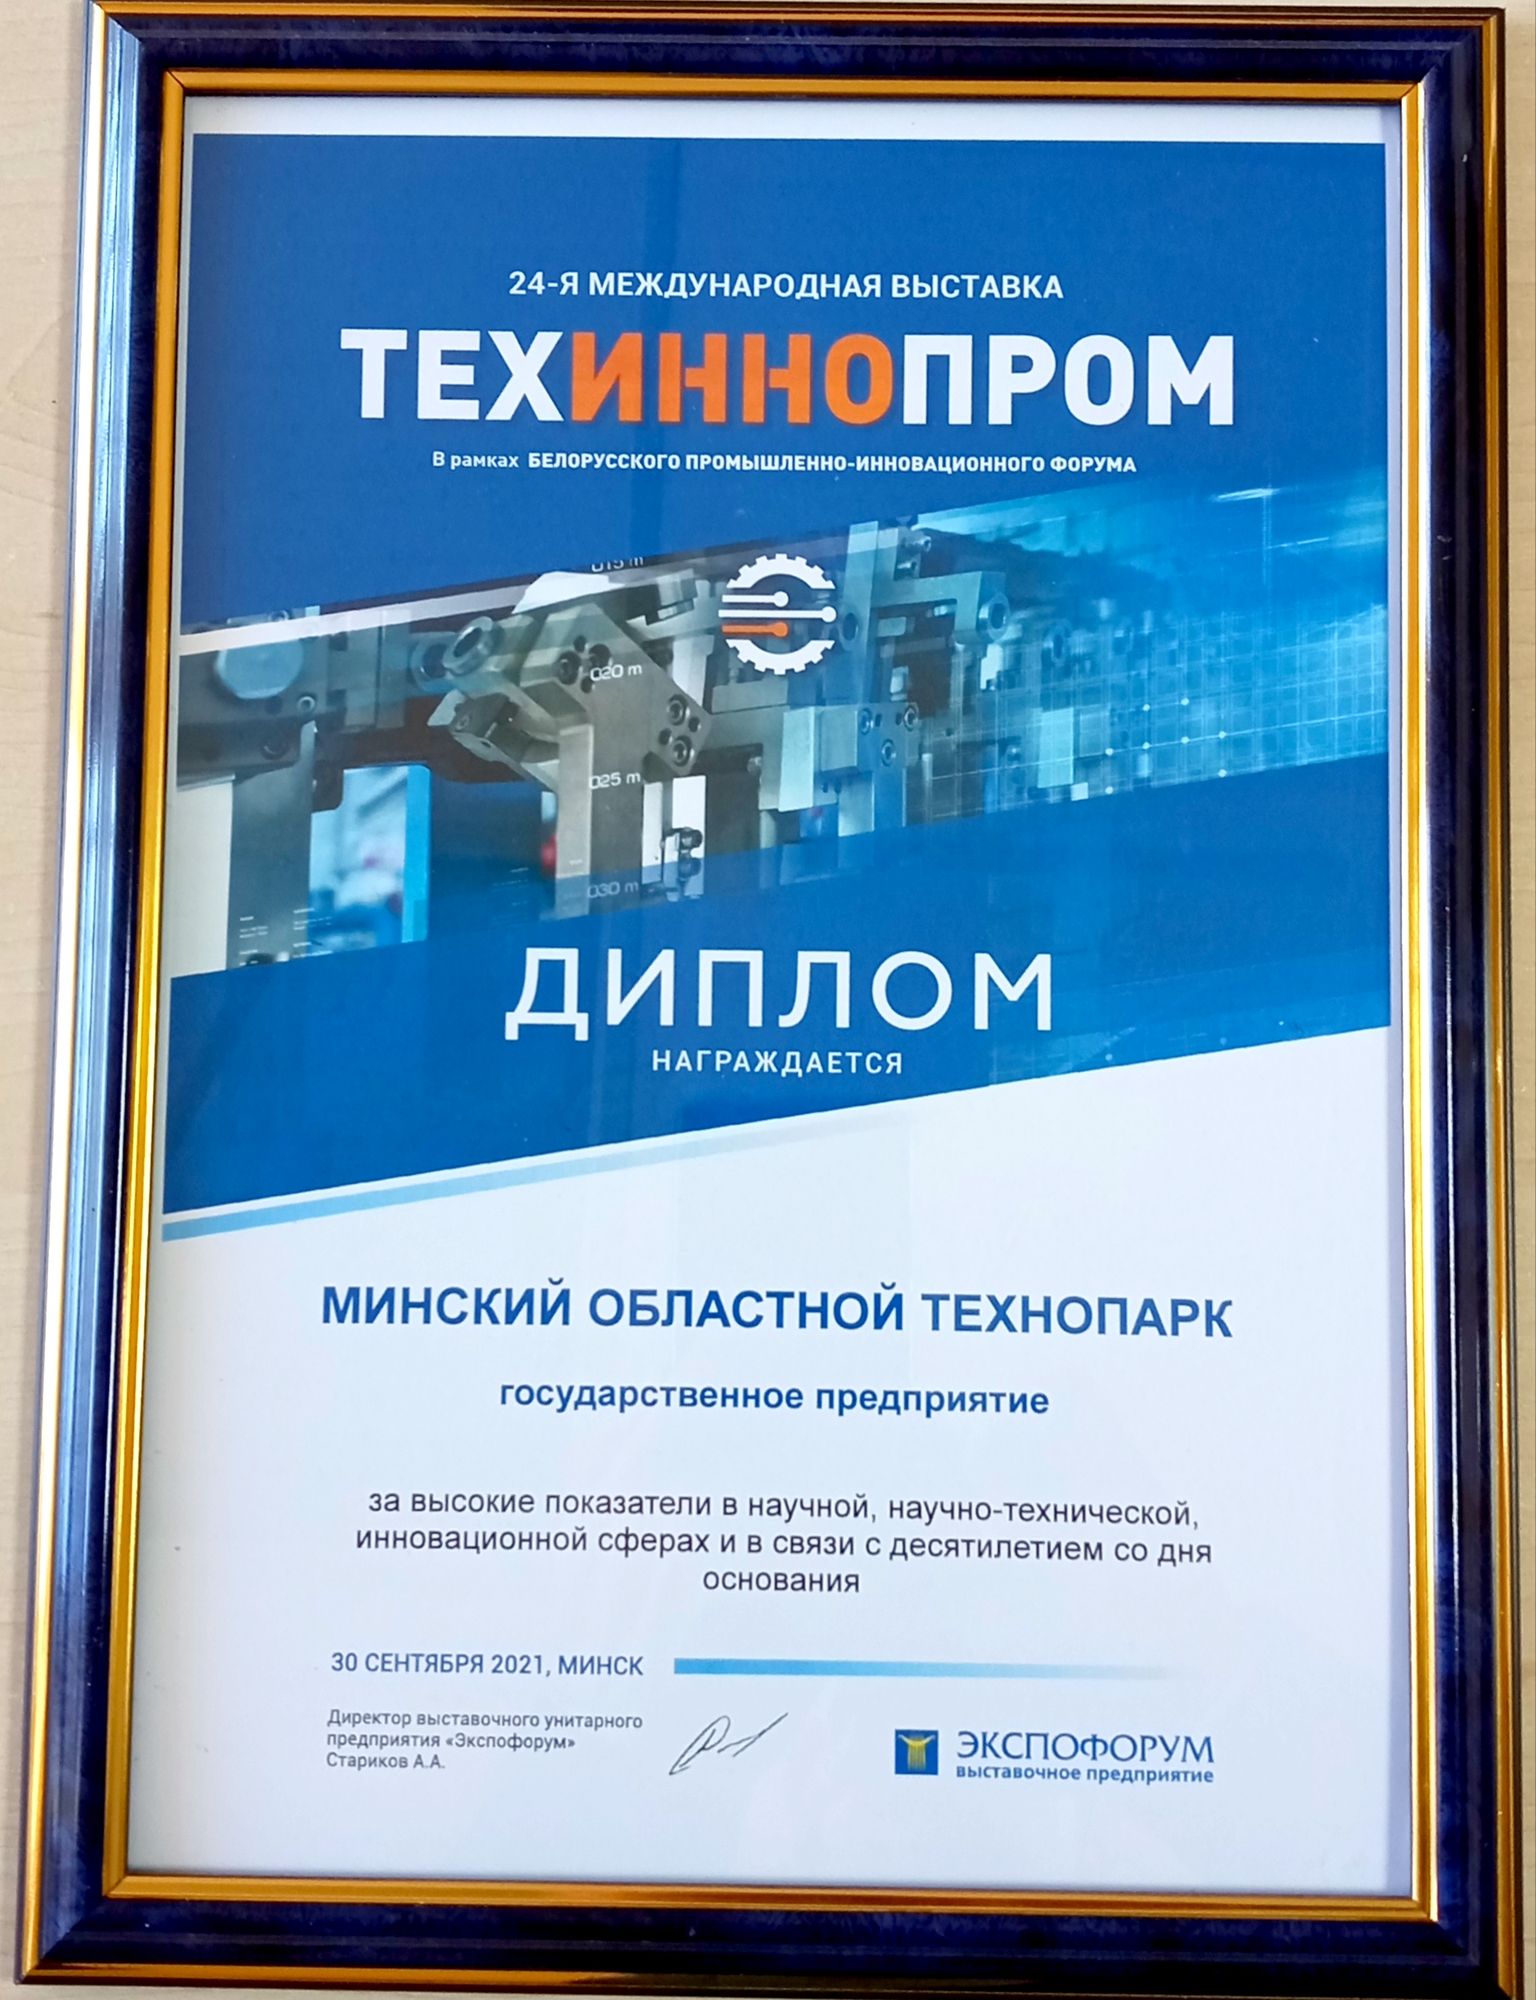 ГП «Минский областной технопарк» приняло участие в 24-й ежегодной международной выставке «ТехИнноПром»